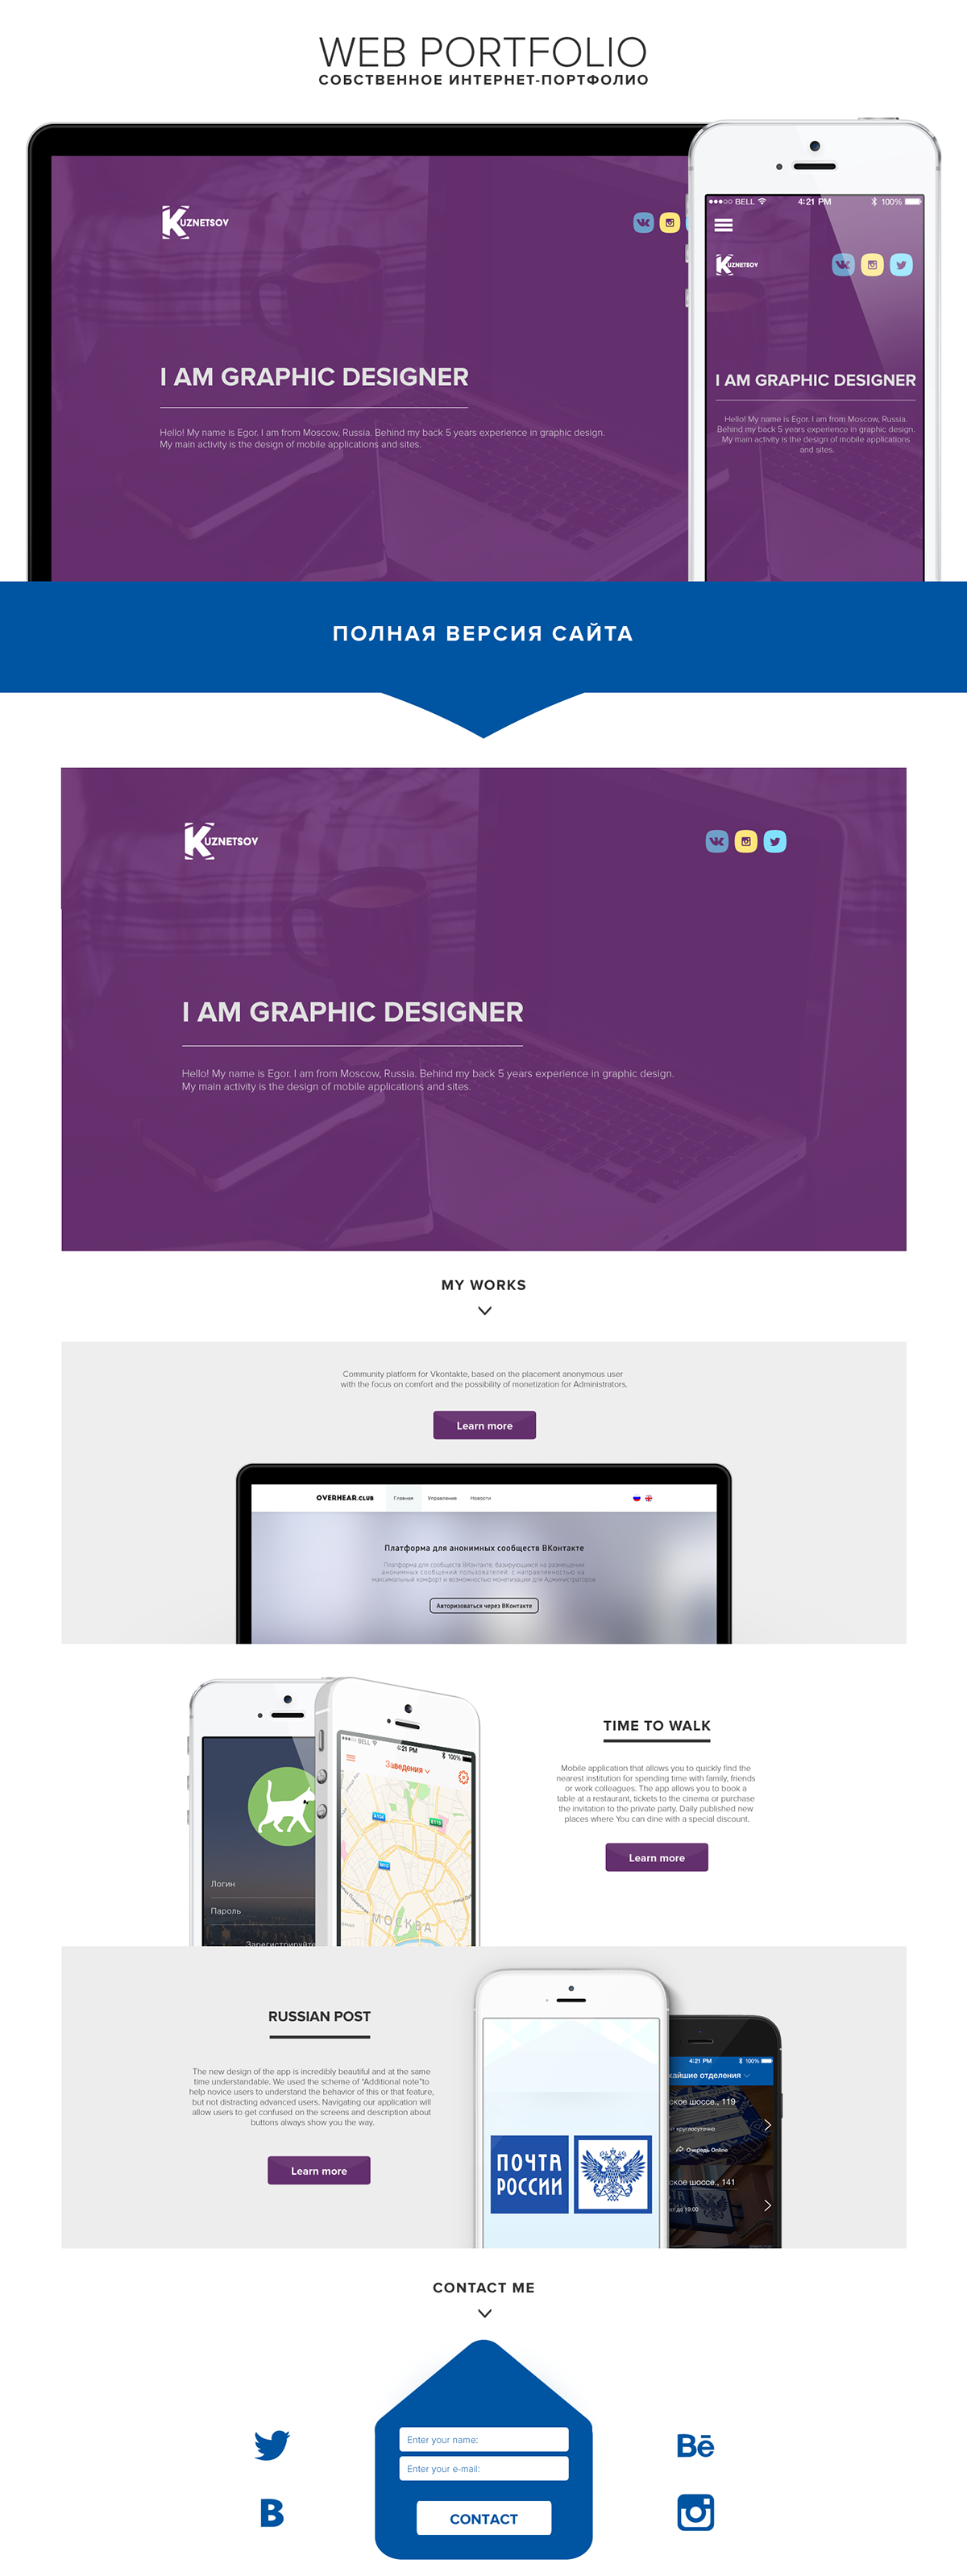 #Design #portfolio   #web   #graphic #site #website